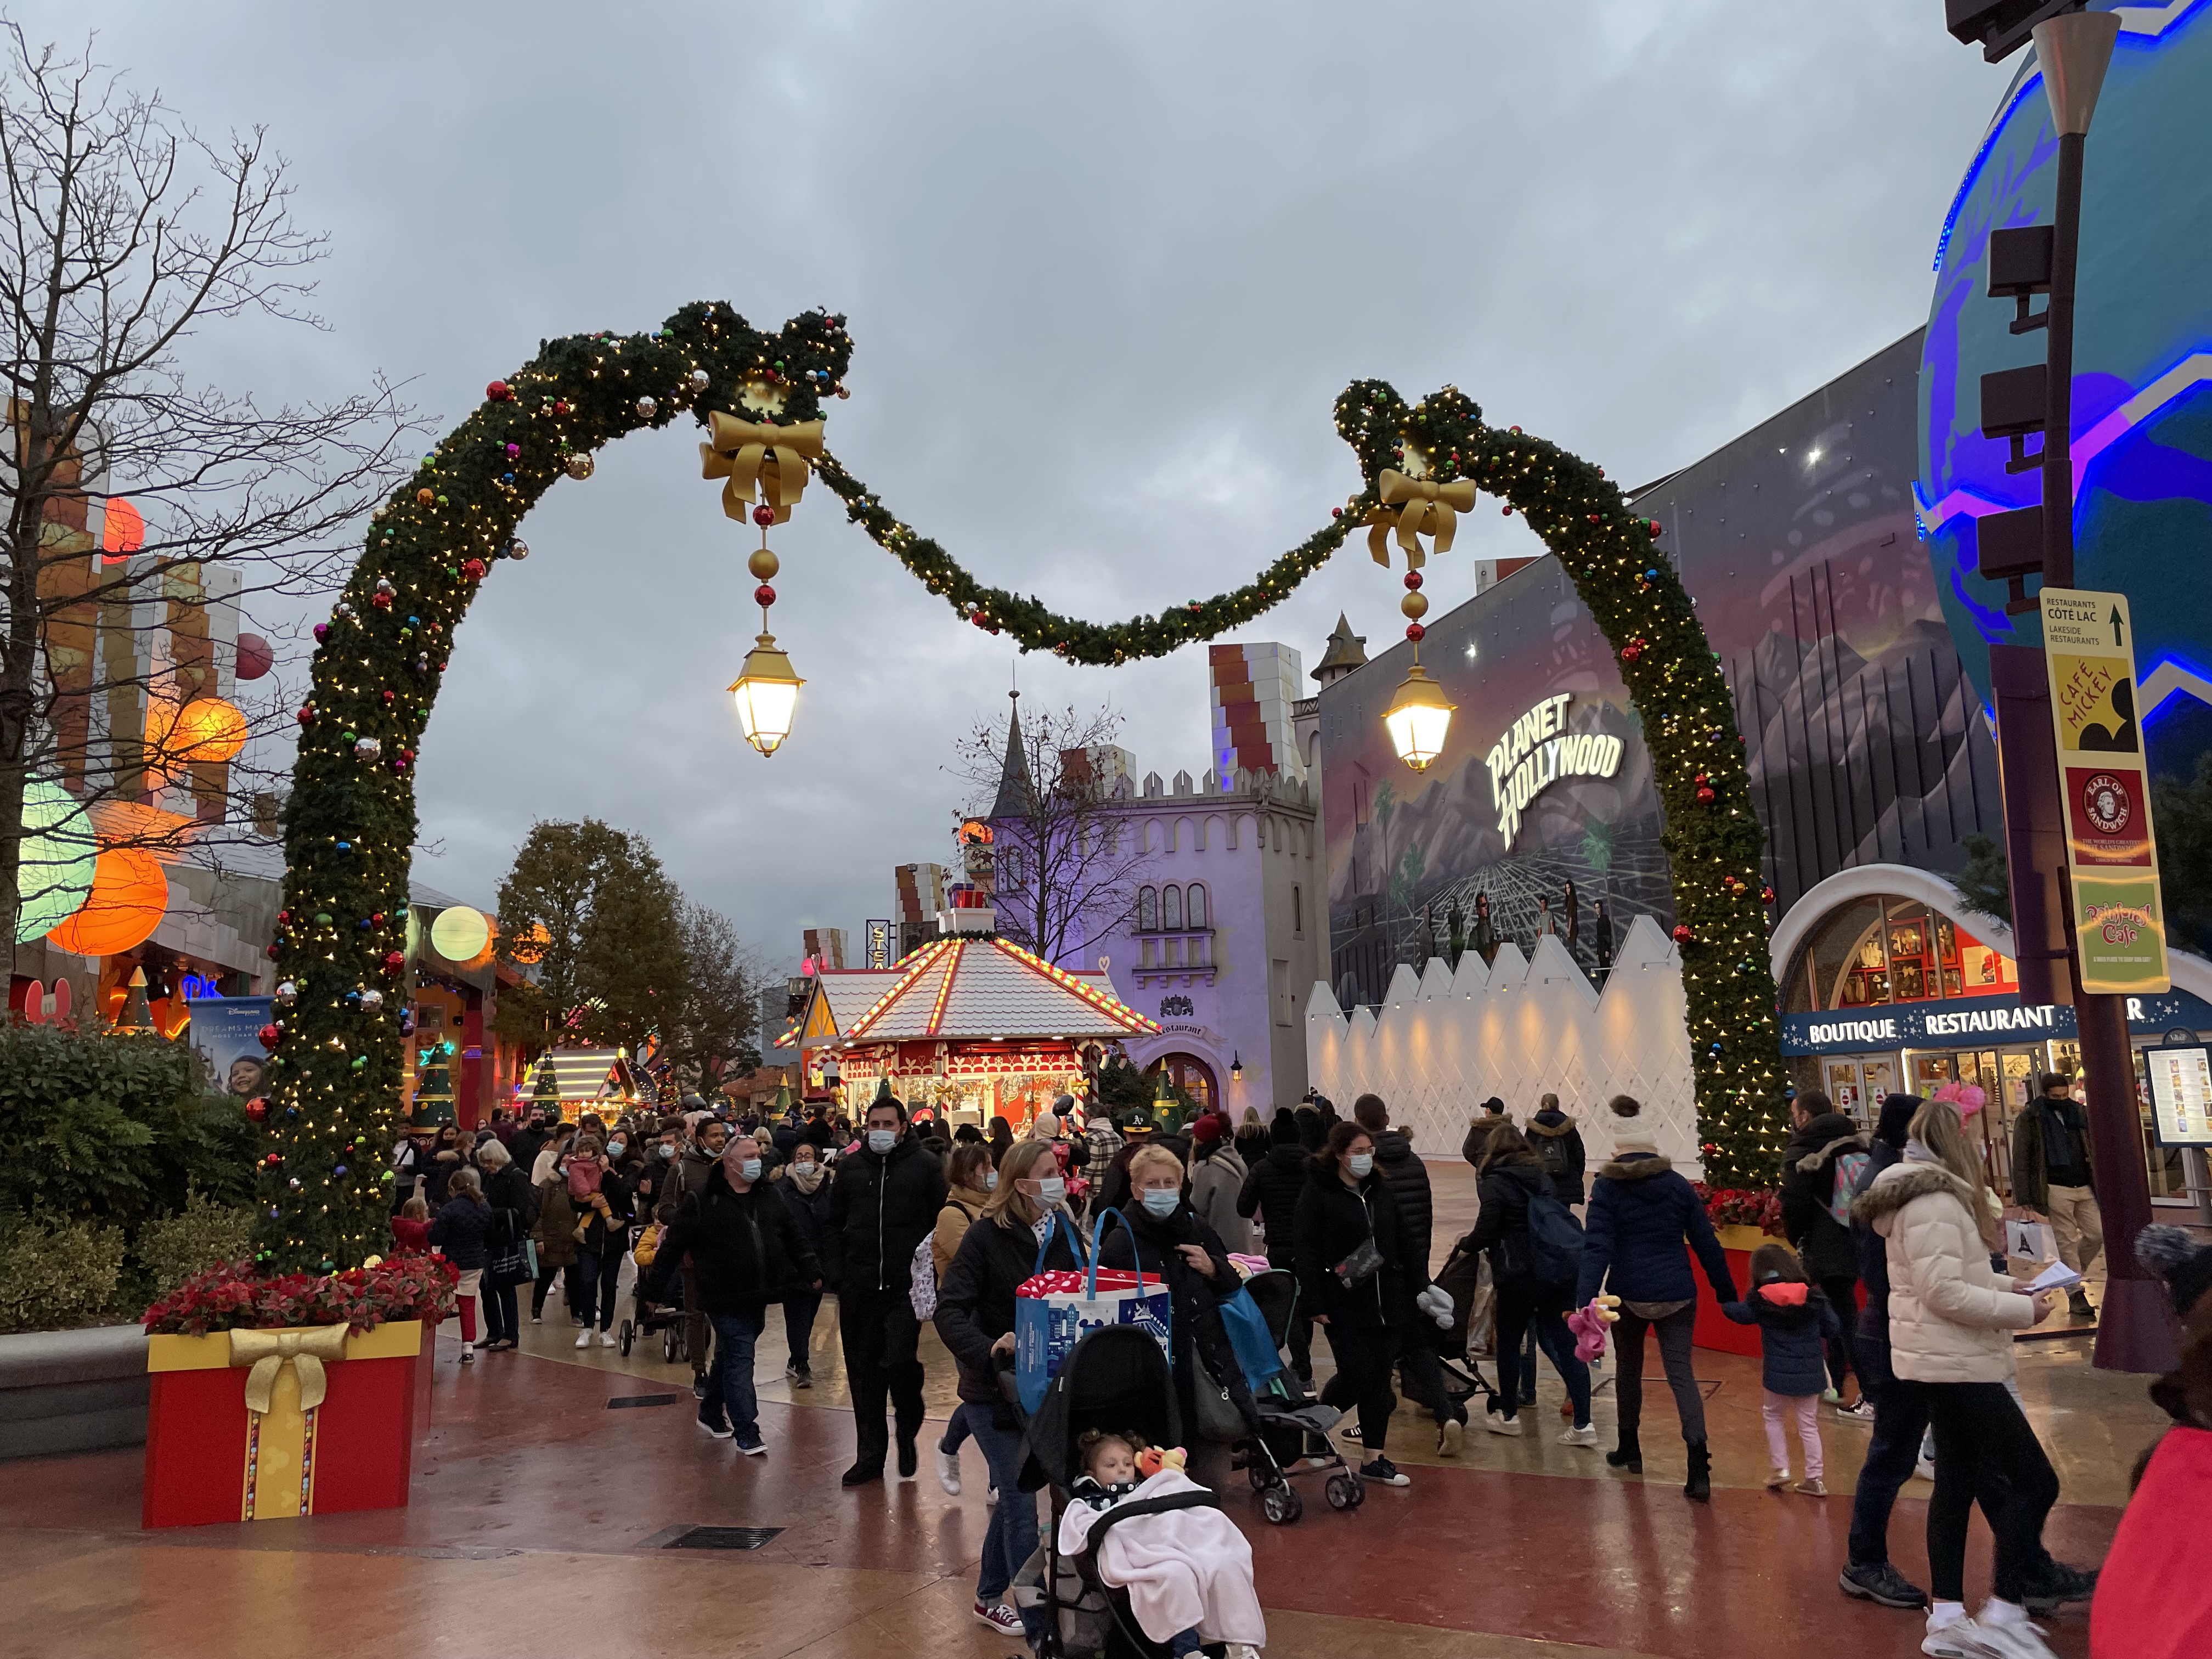 Le Noël Enchanté Disney 2022 : les informations !